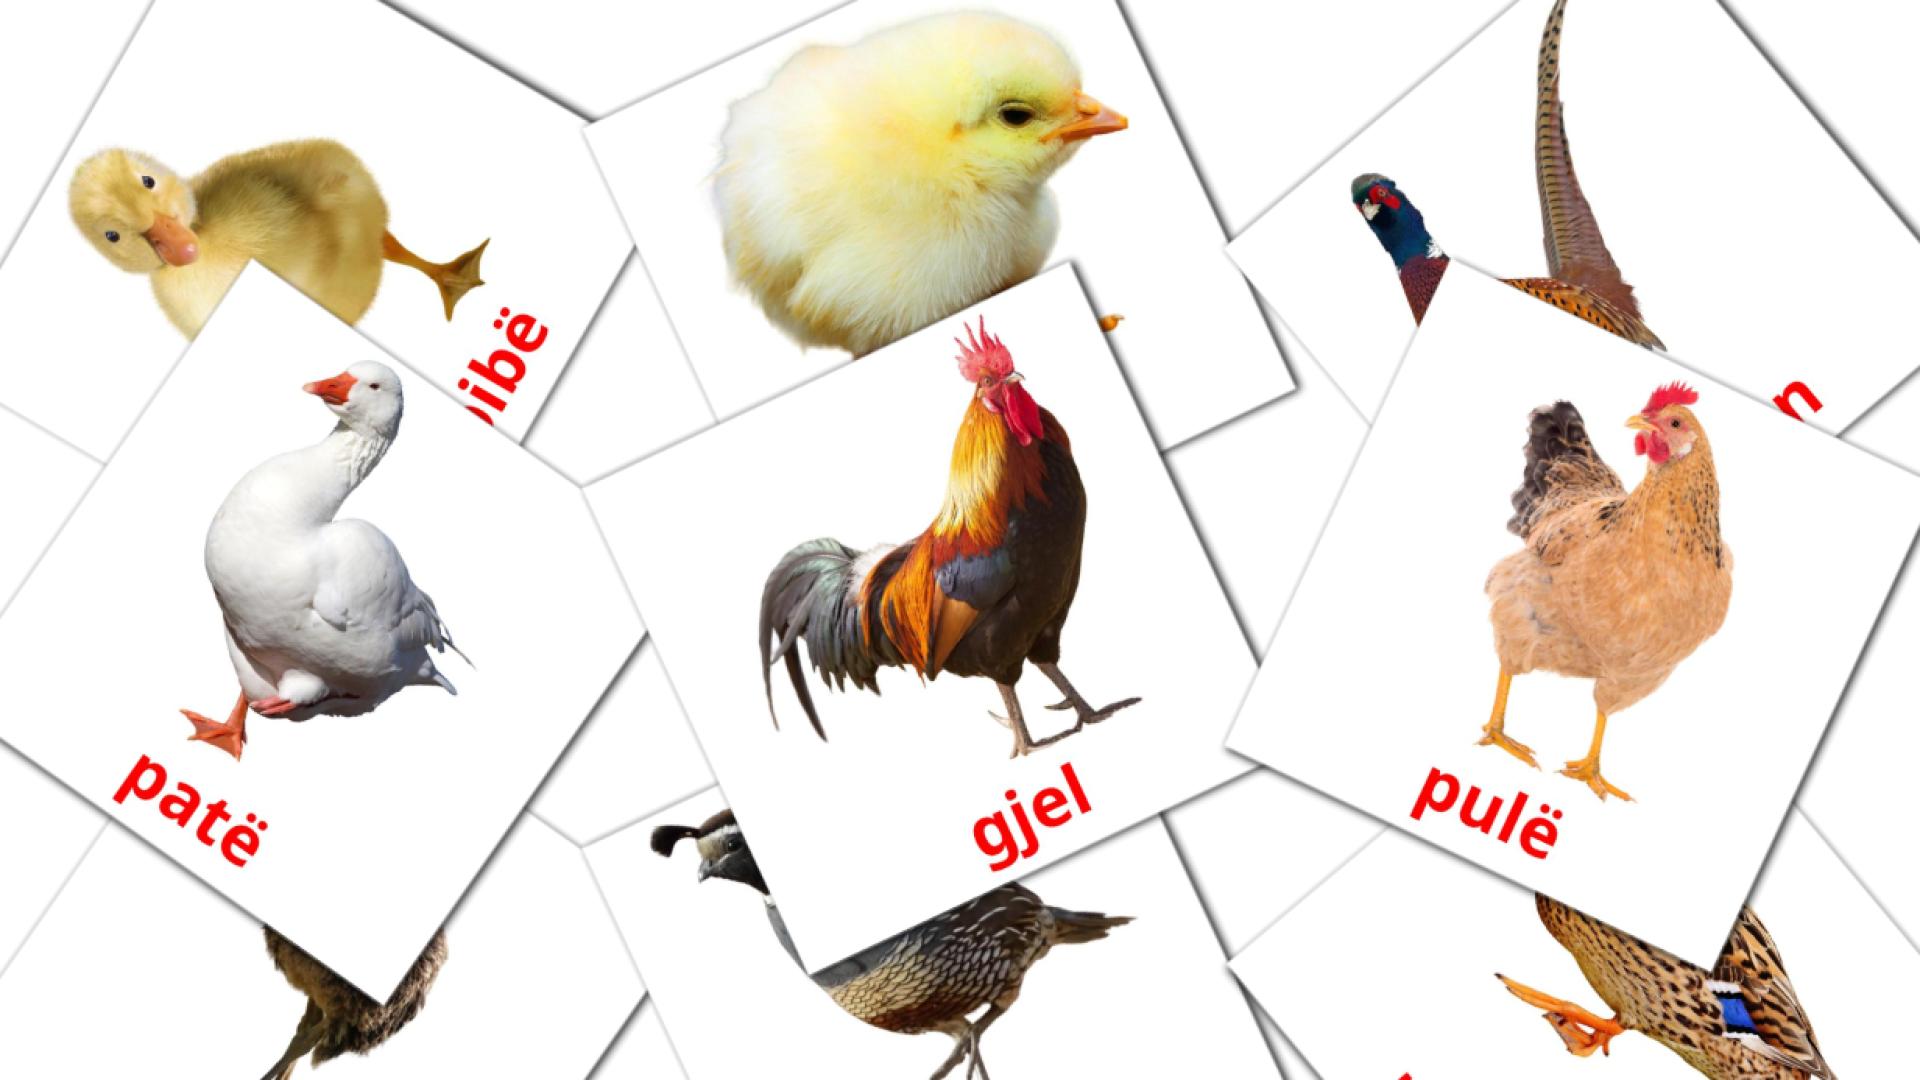 Les Oiseaux de Ferme - cartes de vocabulaire albanais